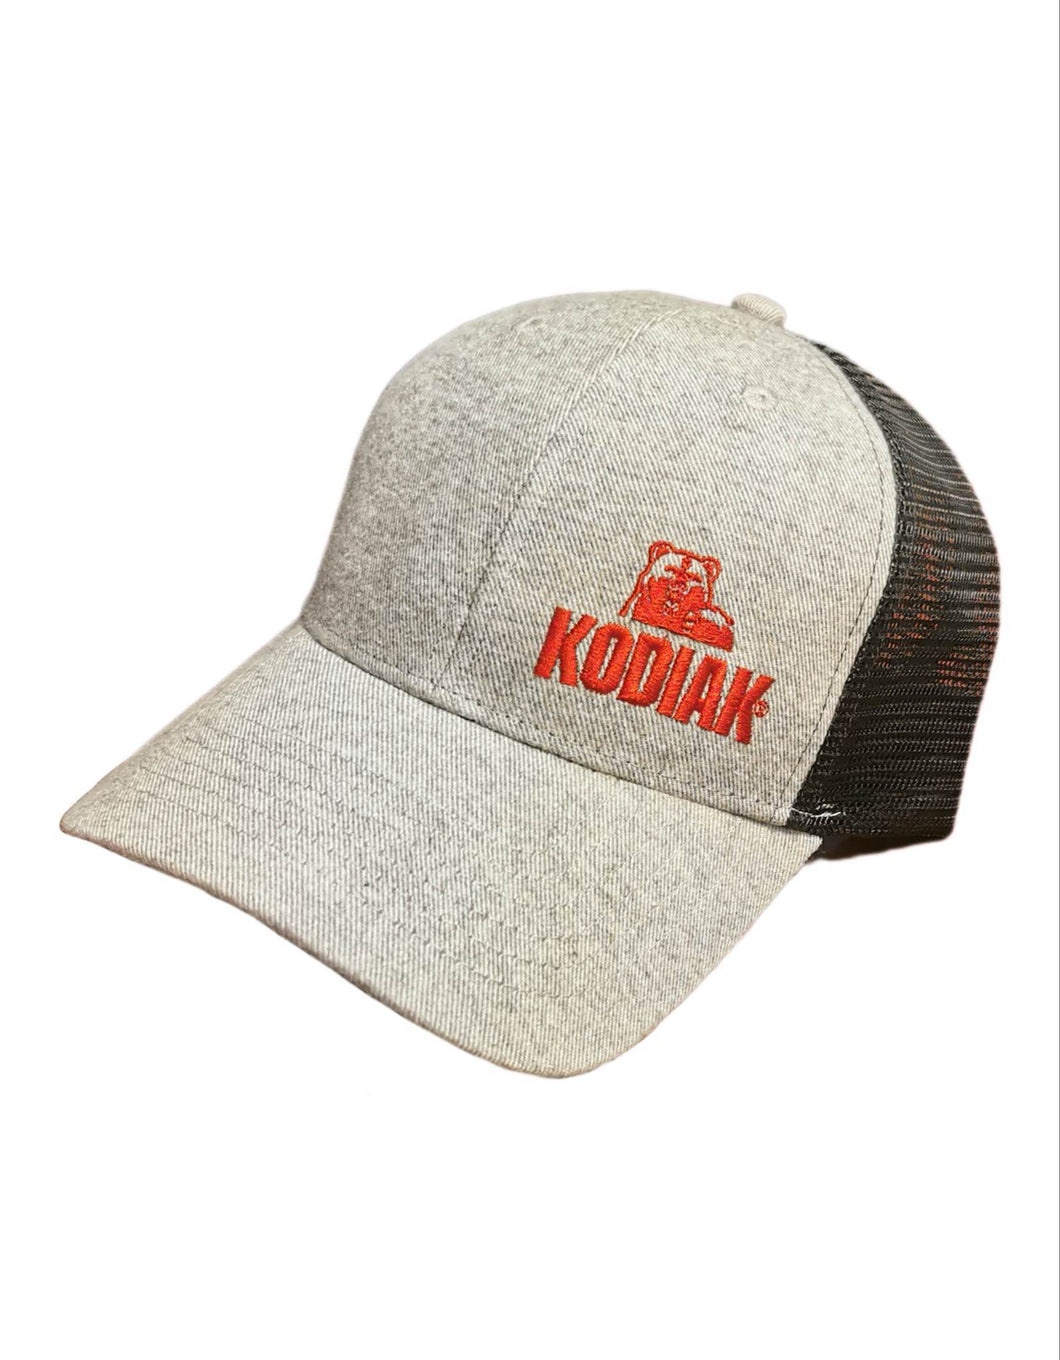 Men's | Kodiak | Trucker Hat | Grey / Black